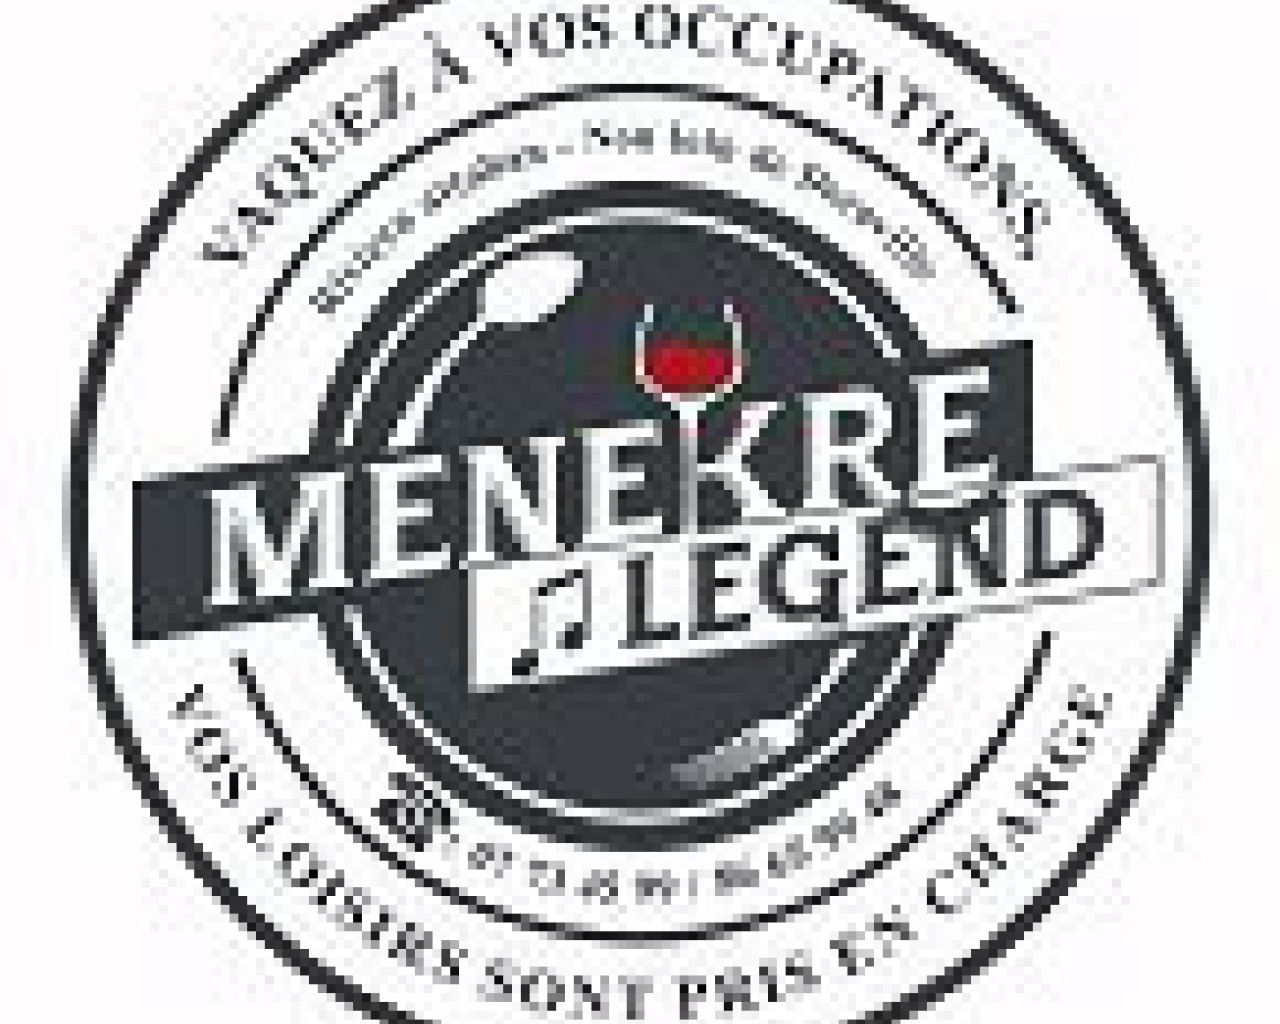 Menekré Legend : Espace événementiel, restaurant, bar, louange